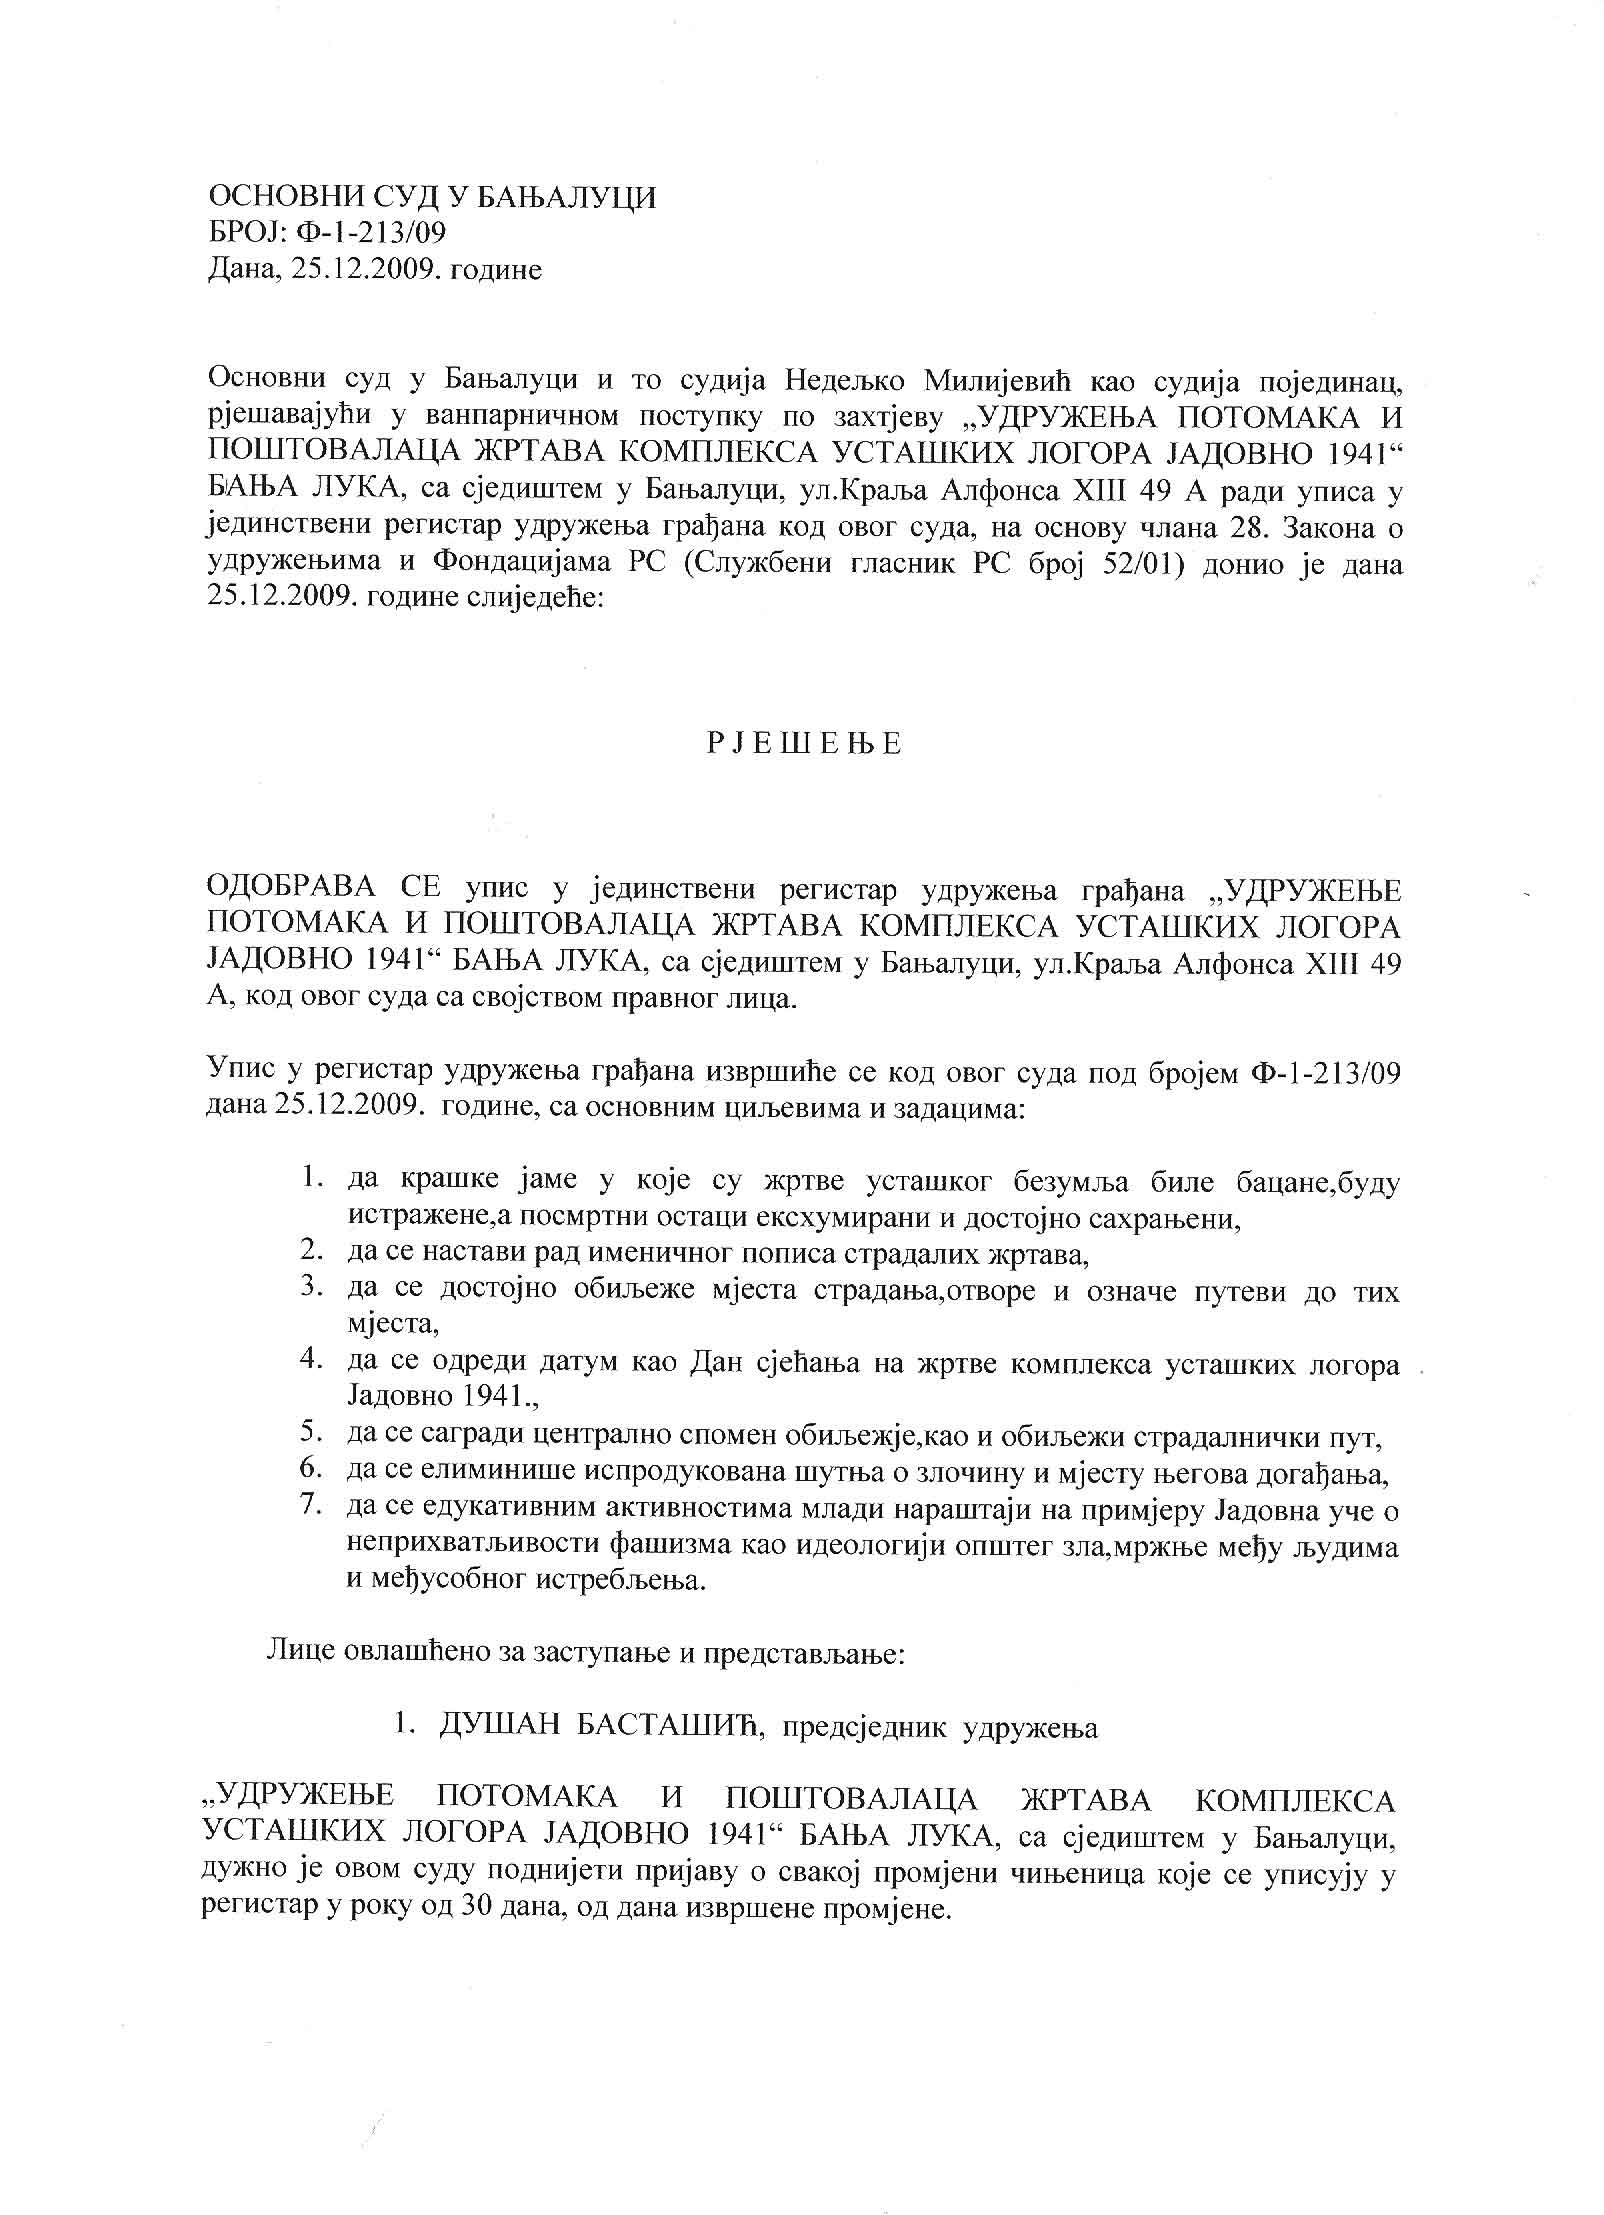 Судска регистрација удружења Јадовно 1941.